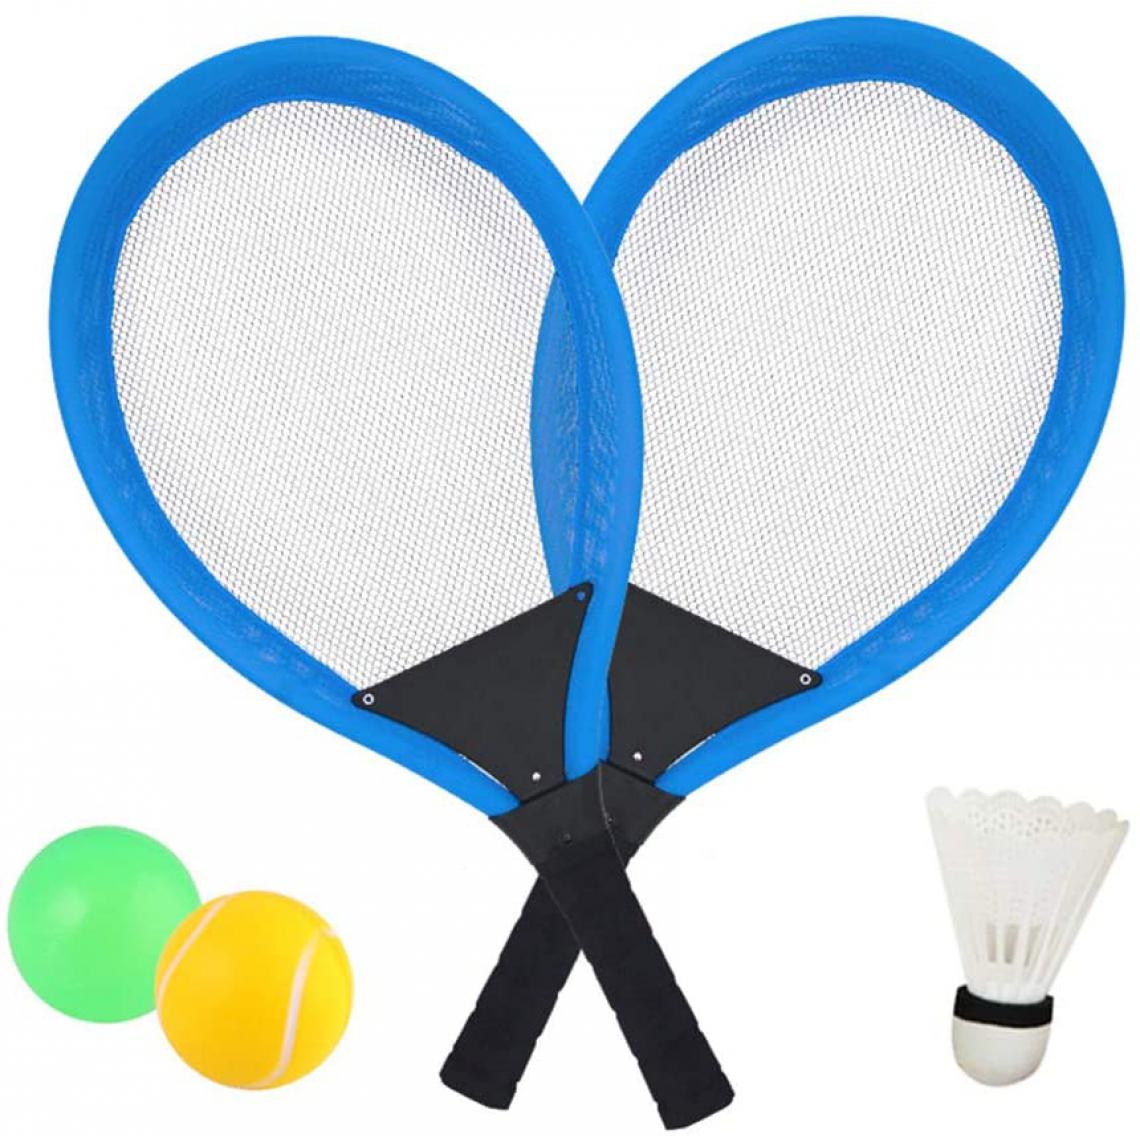 Dreamon - Jeu De Raquettes Tennis Badminton 3 in 1 bleu noir - Jeux de balles